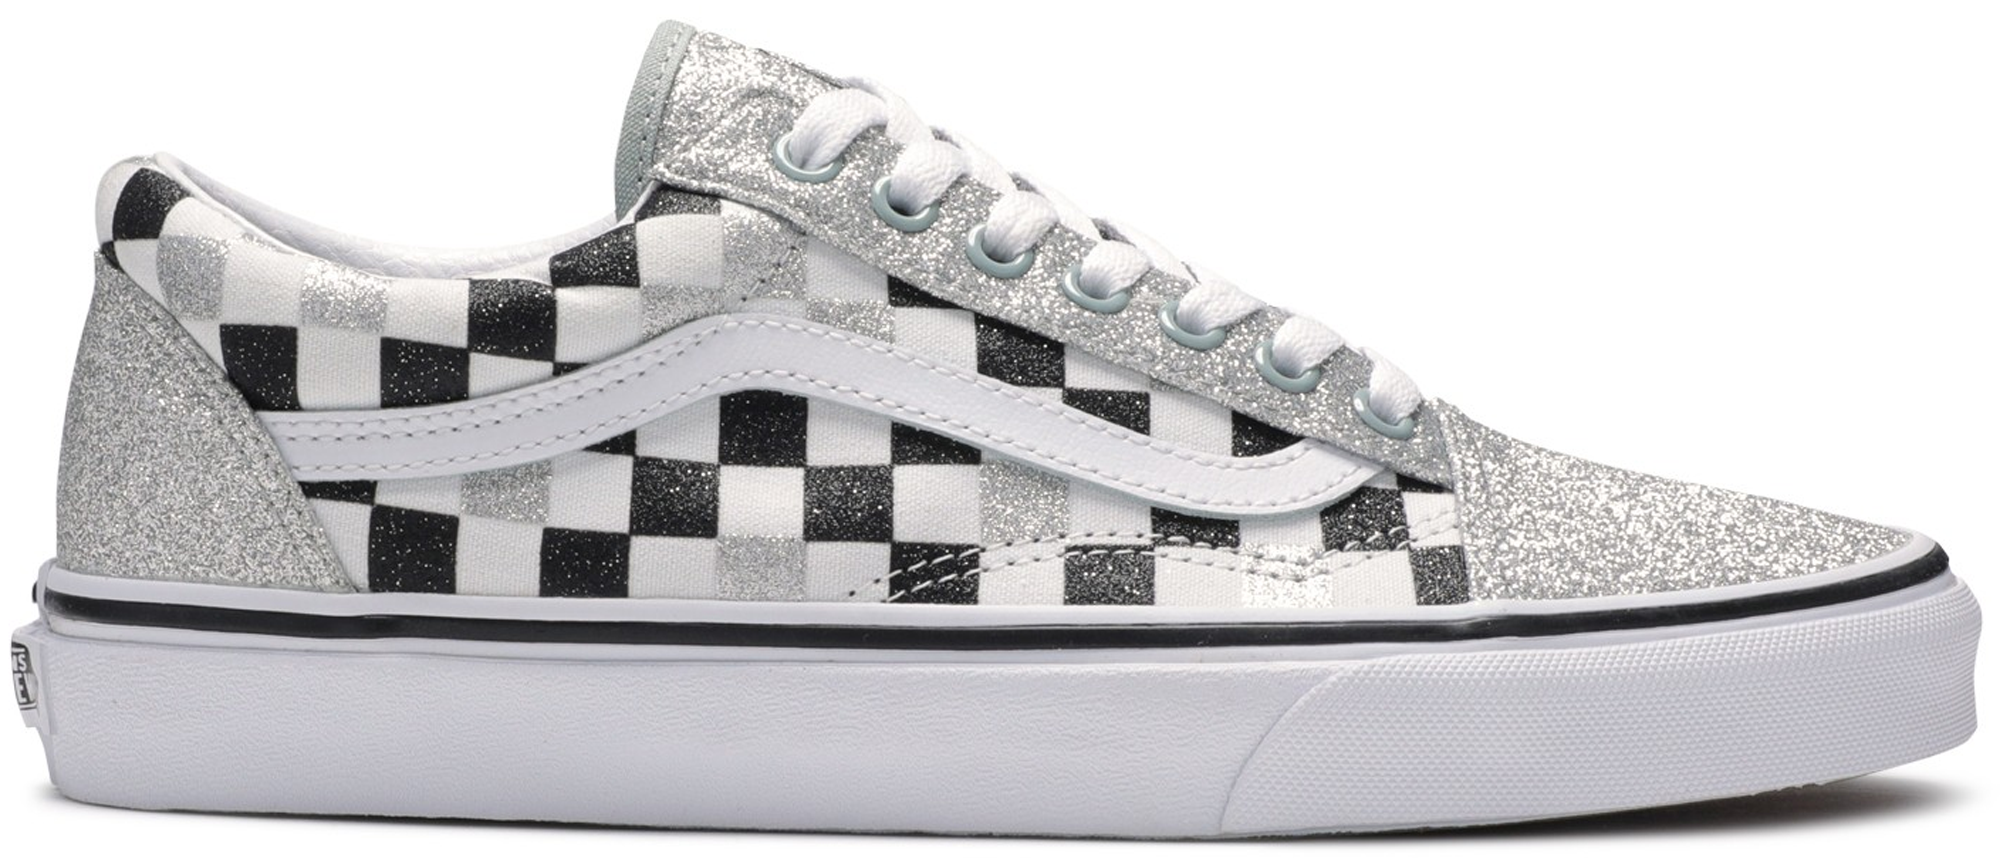 vans old skool silver & white glitter skate shoes